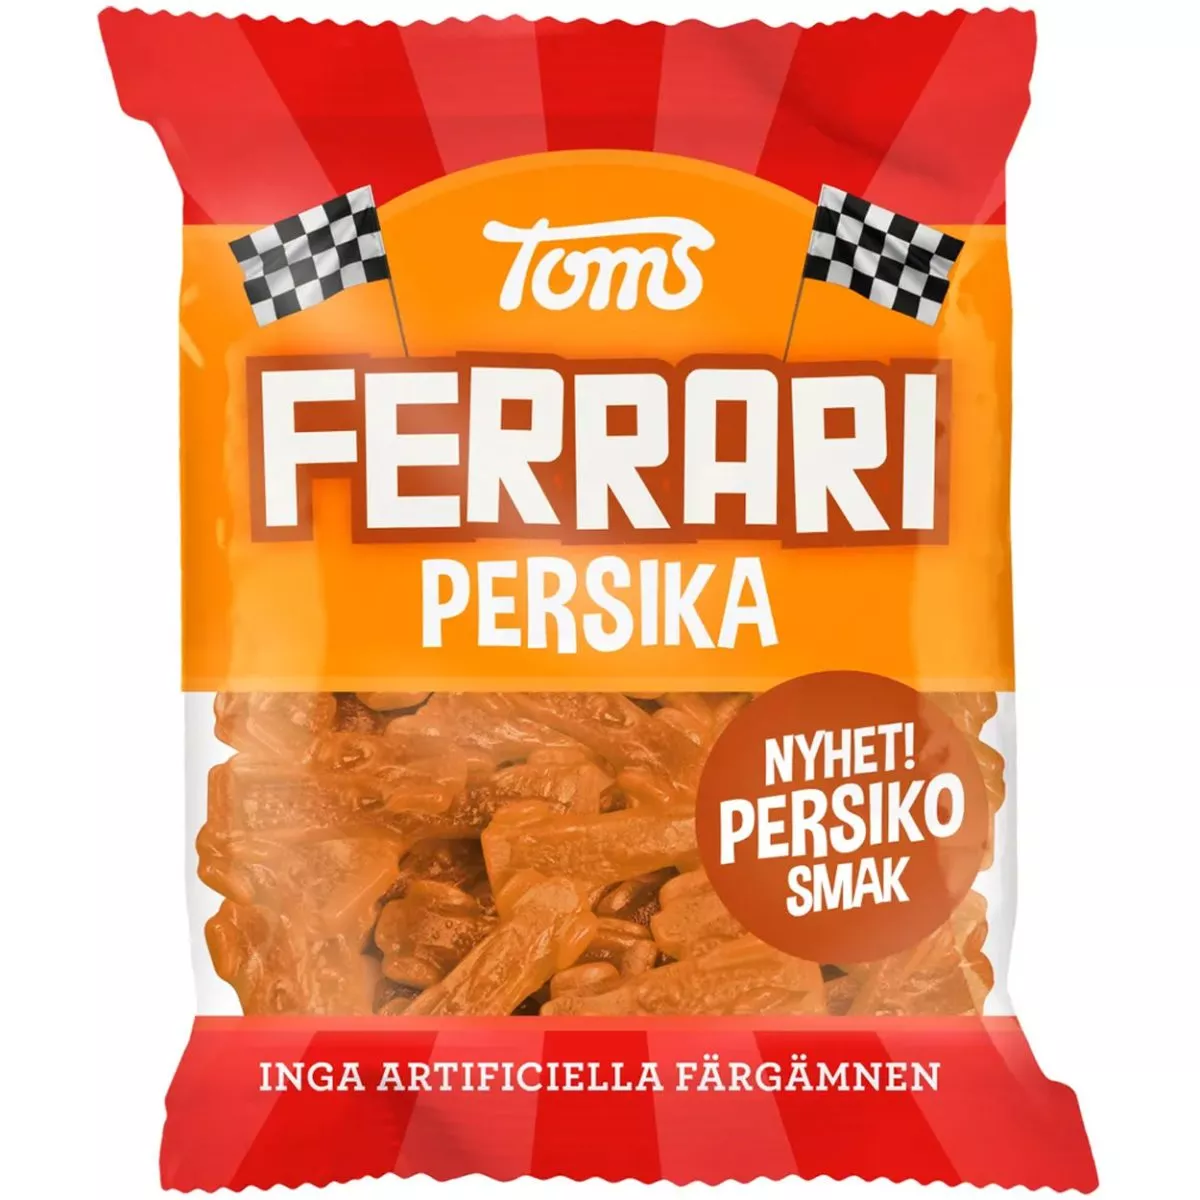 Toms Ferrari Persika Sur (120g) *SONDERPREIS wegen kurzer Haltbarkeit* 1